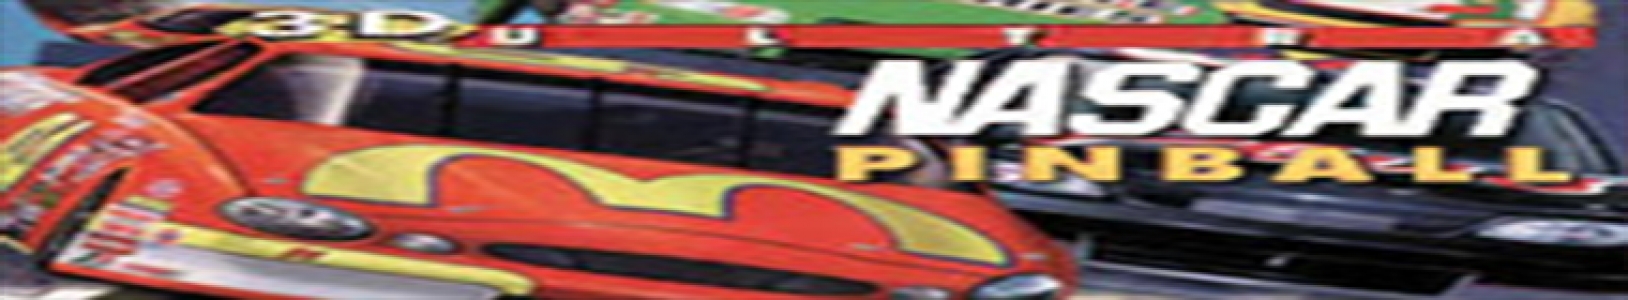 3-D Ultra Pinball: NASCAR banner